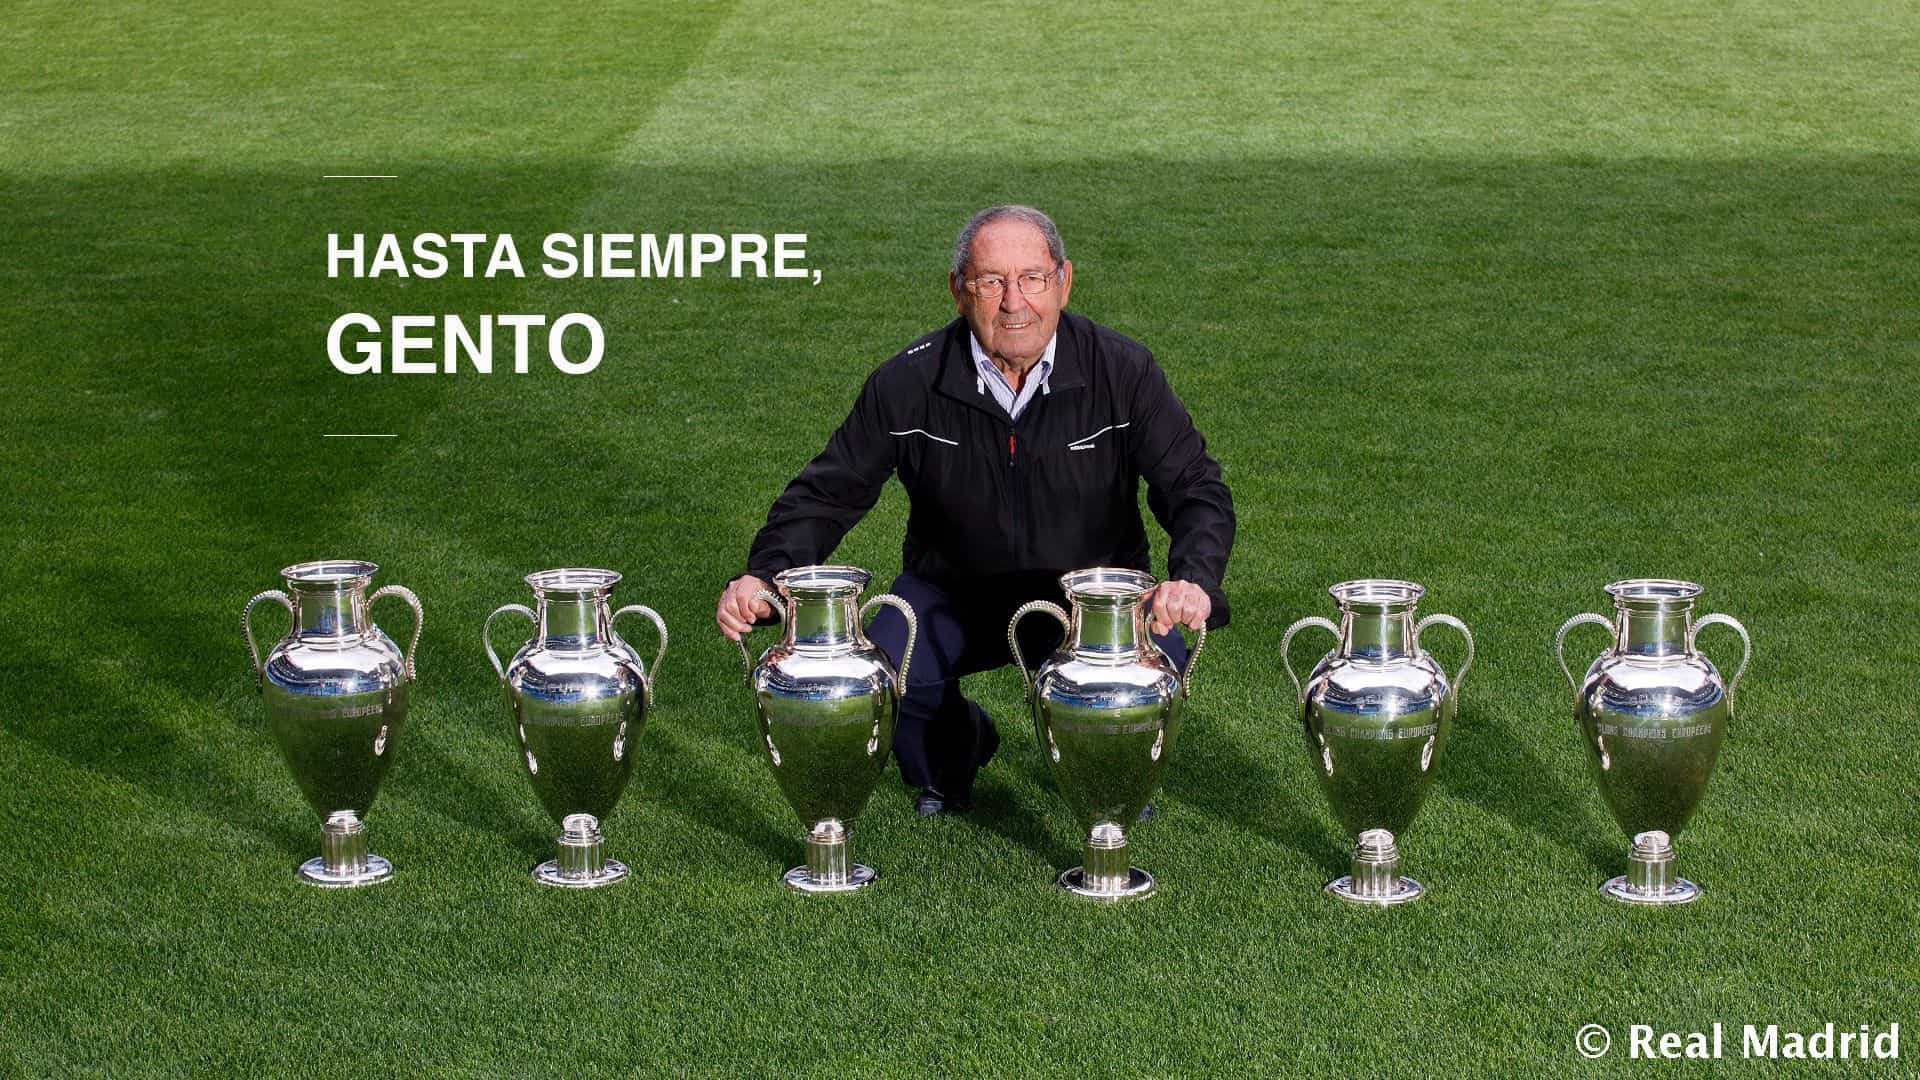 Morre Francisco Gento, ídolo do Real Madrid e maior campeão europeu